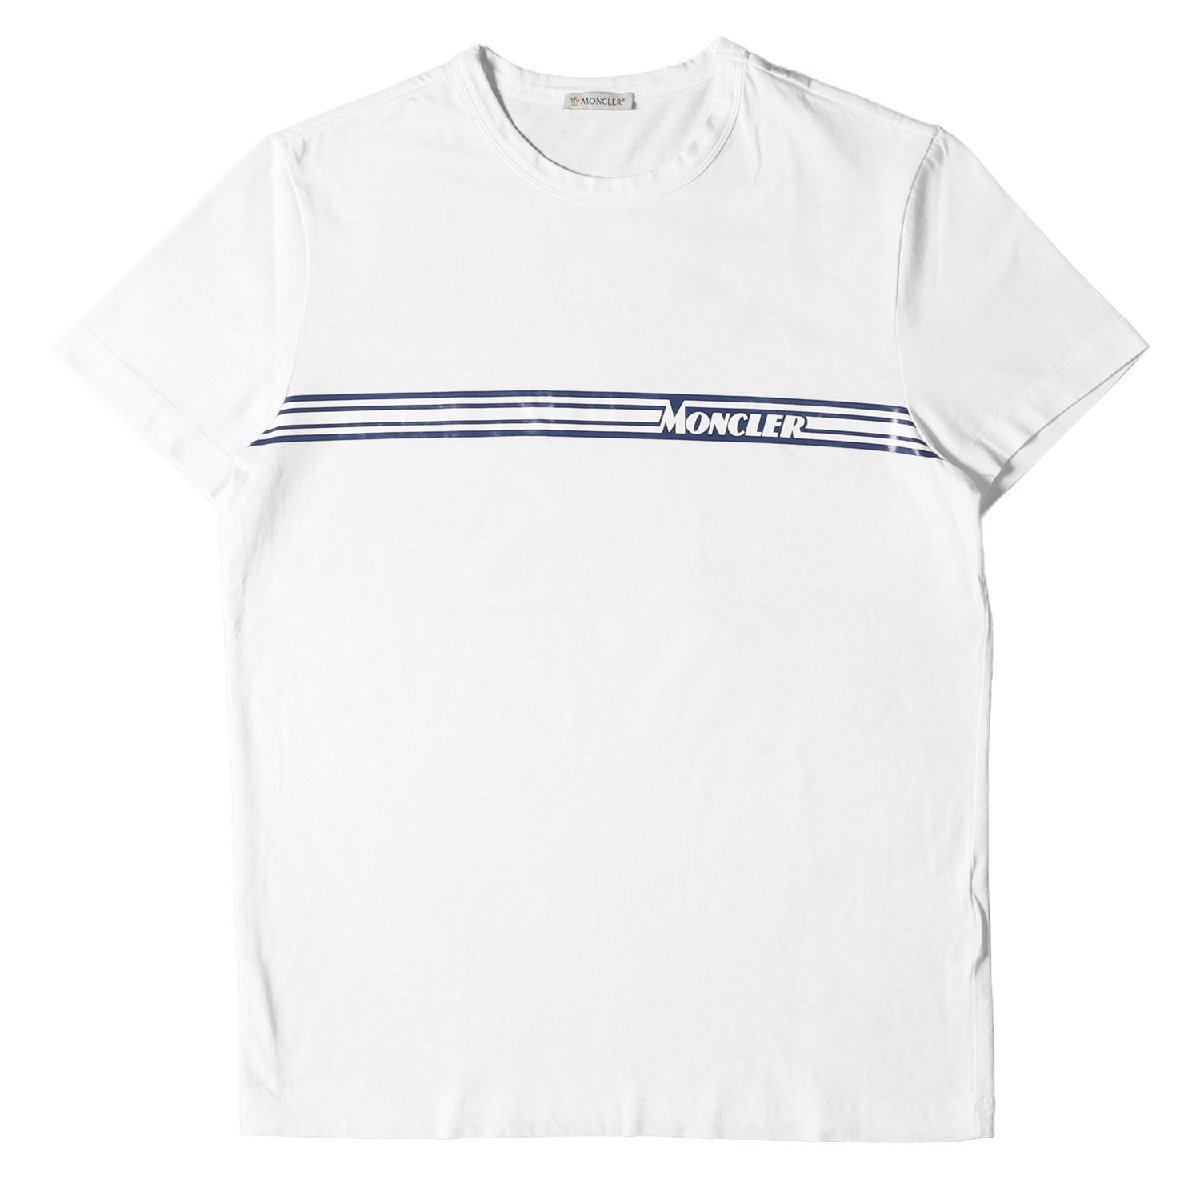 MONCLER モンクレール Tシャツ サイズ:M 20SS ラインロゴ クルーネック Tシャツ MAGLIA T-SHIRT F10918C70710 8390T ホワイト 白